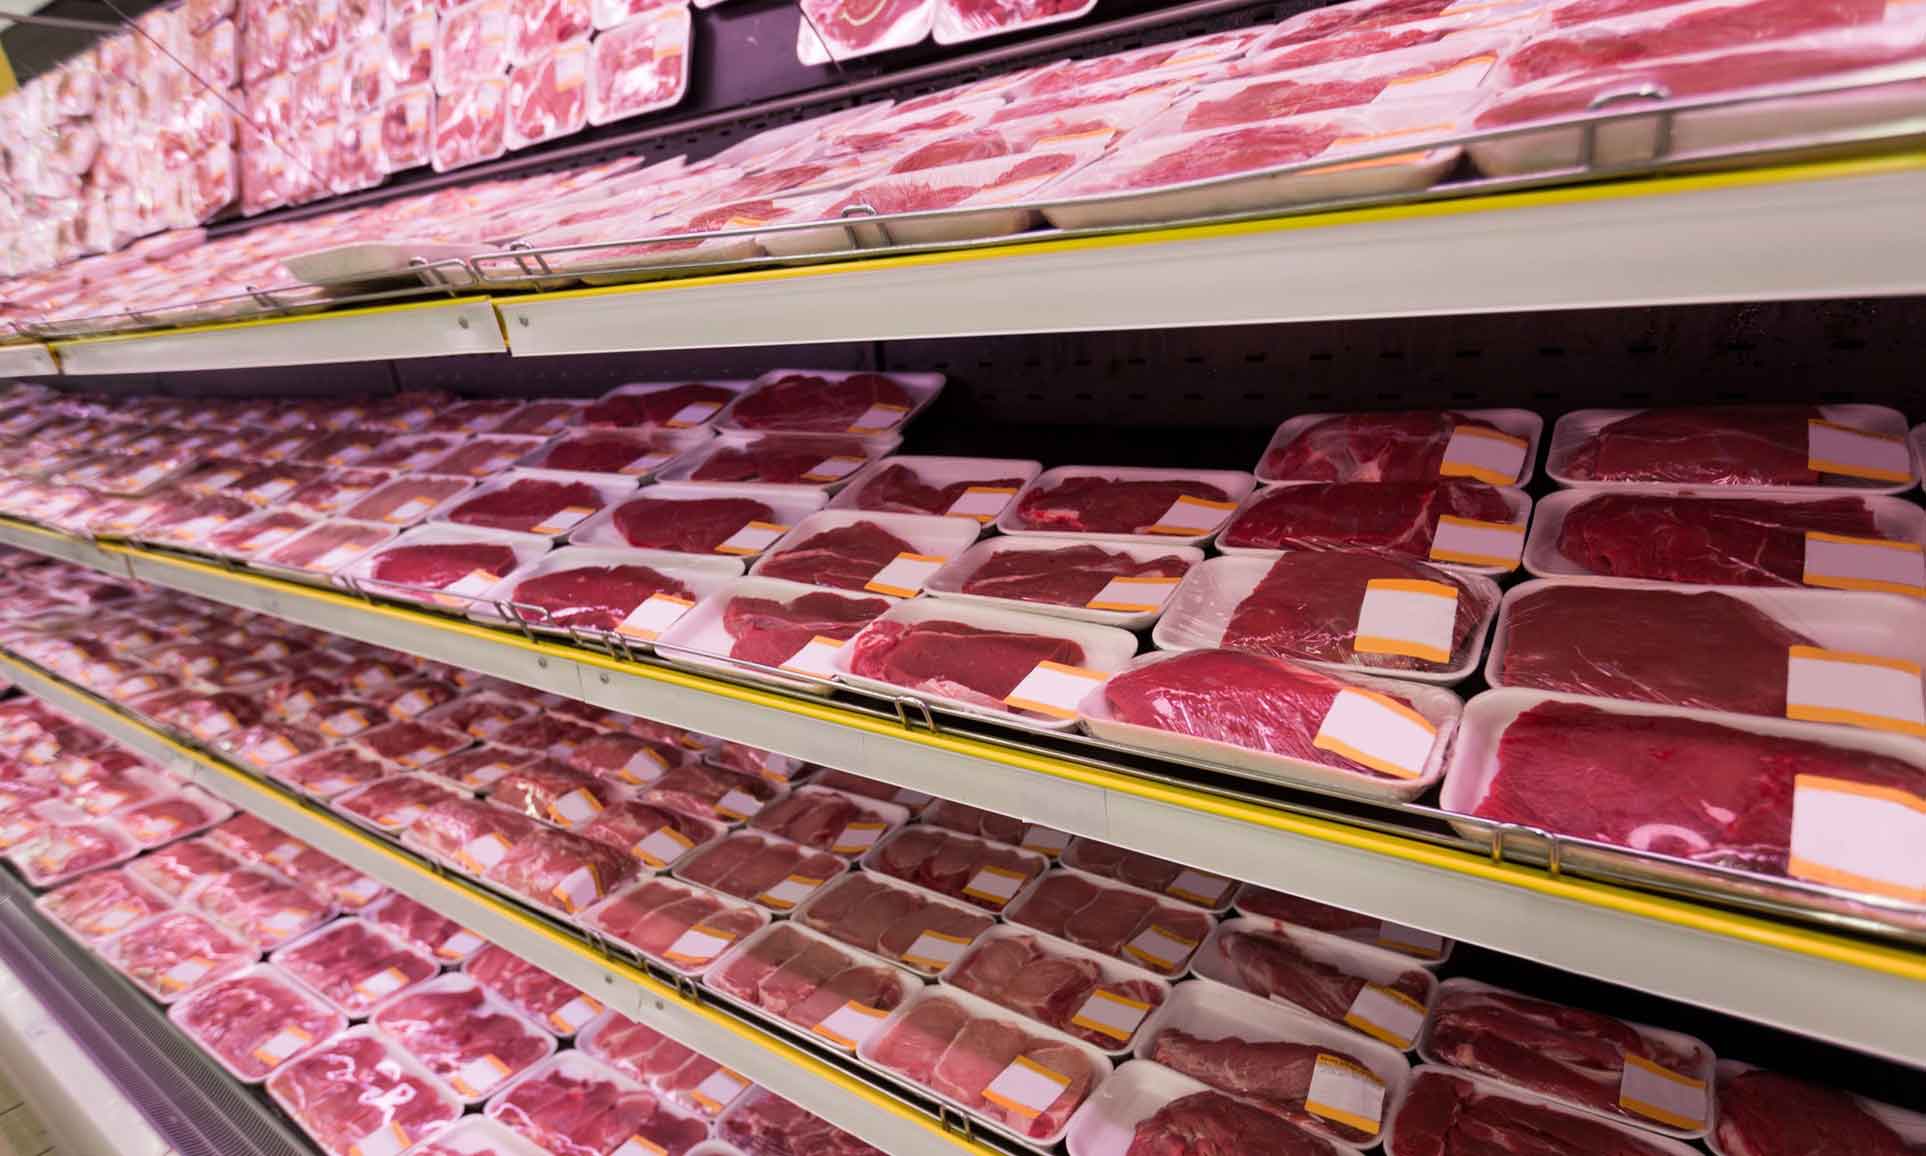 قیمت گوشت برزیلی